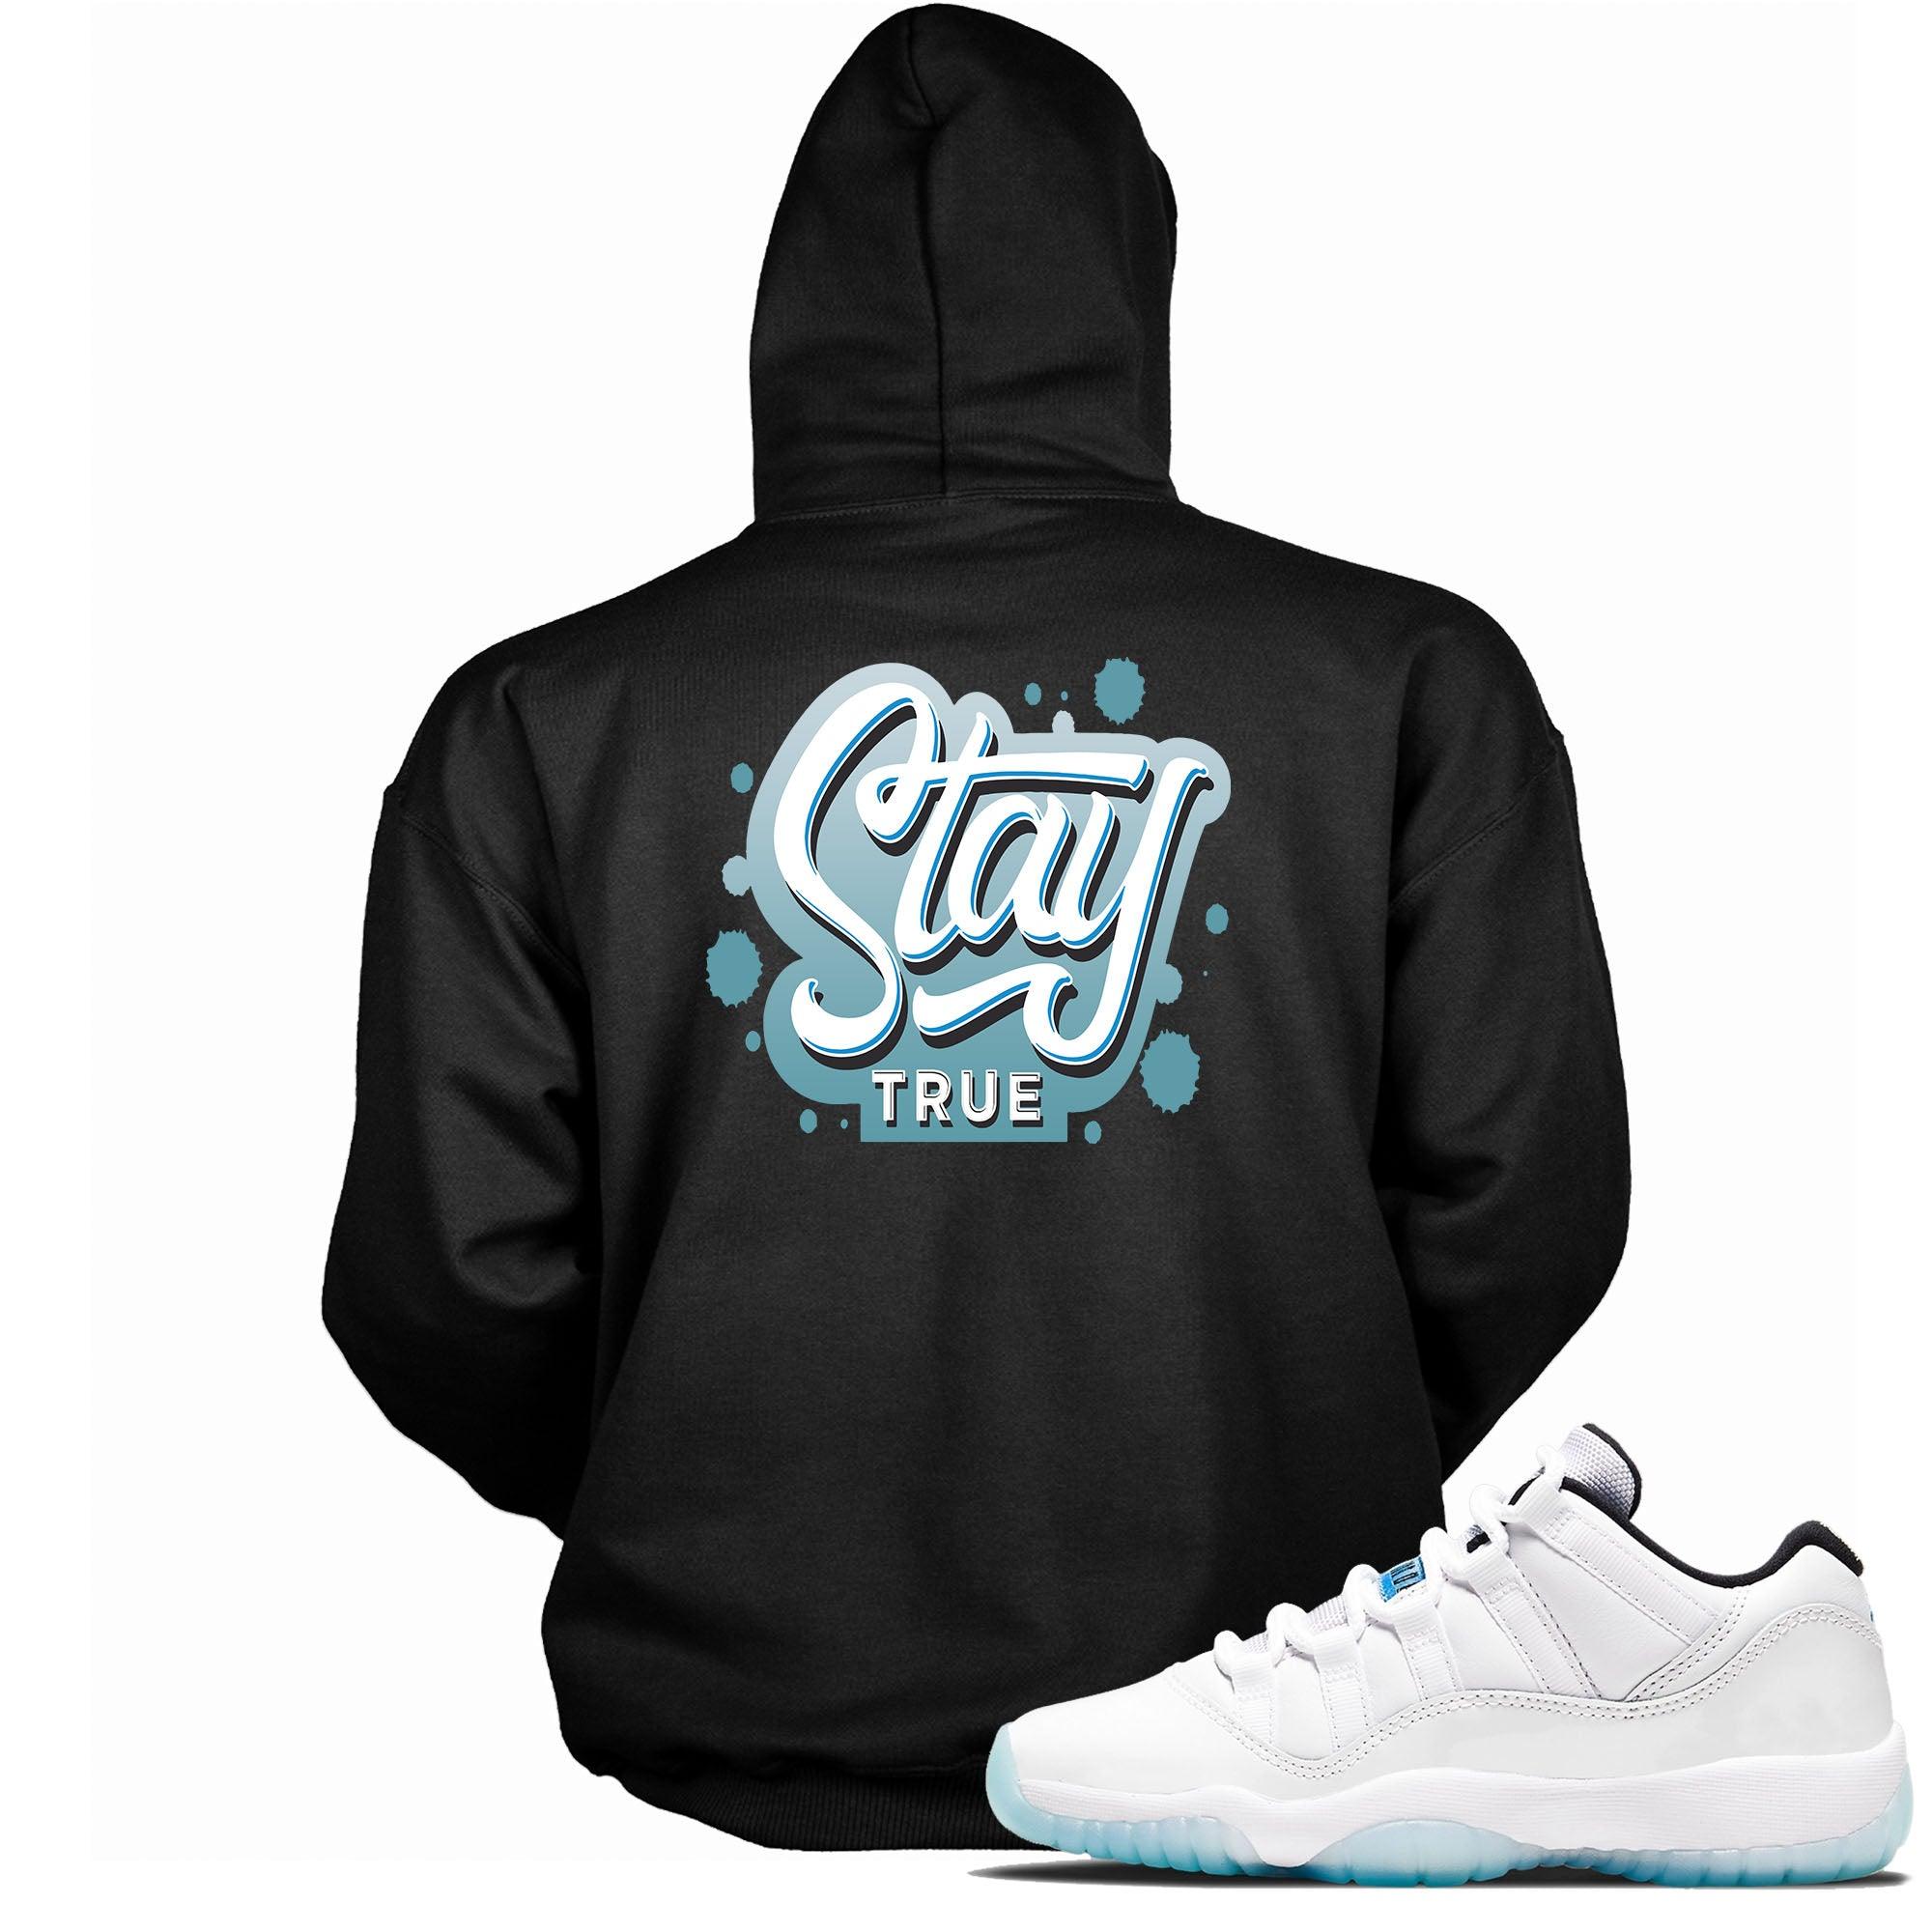 Stay True Sneaker Sweatshirt AJ 11 Retro Low Legend Blue photo